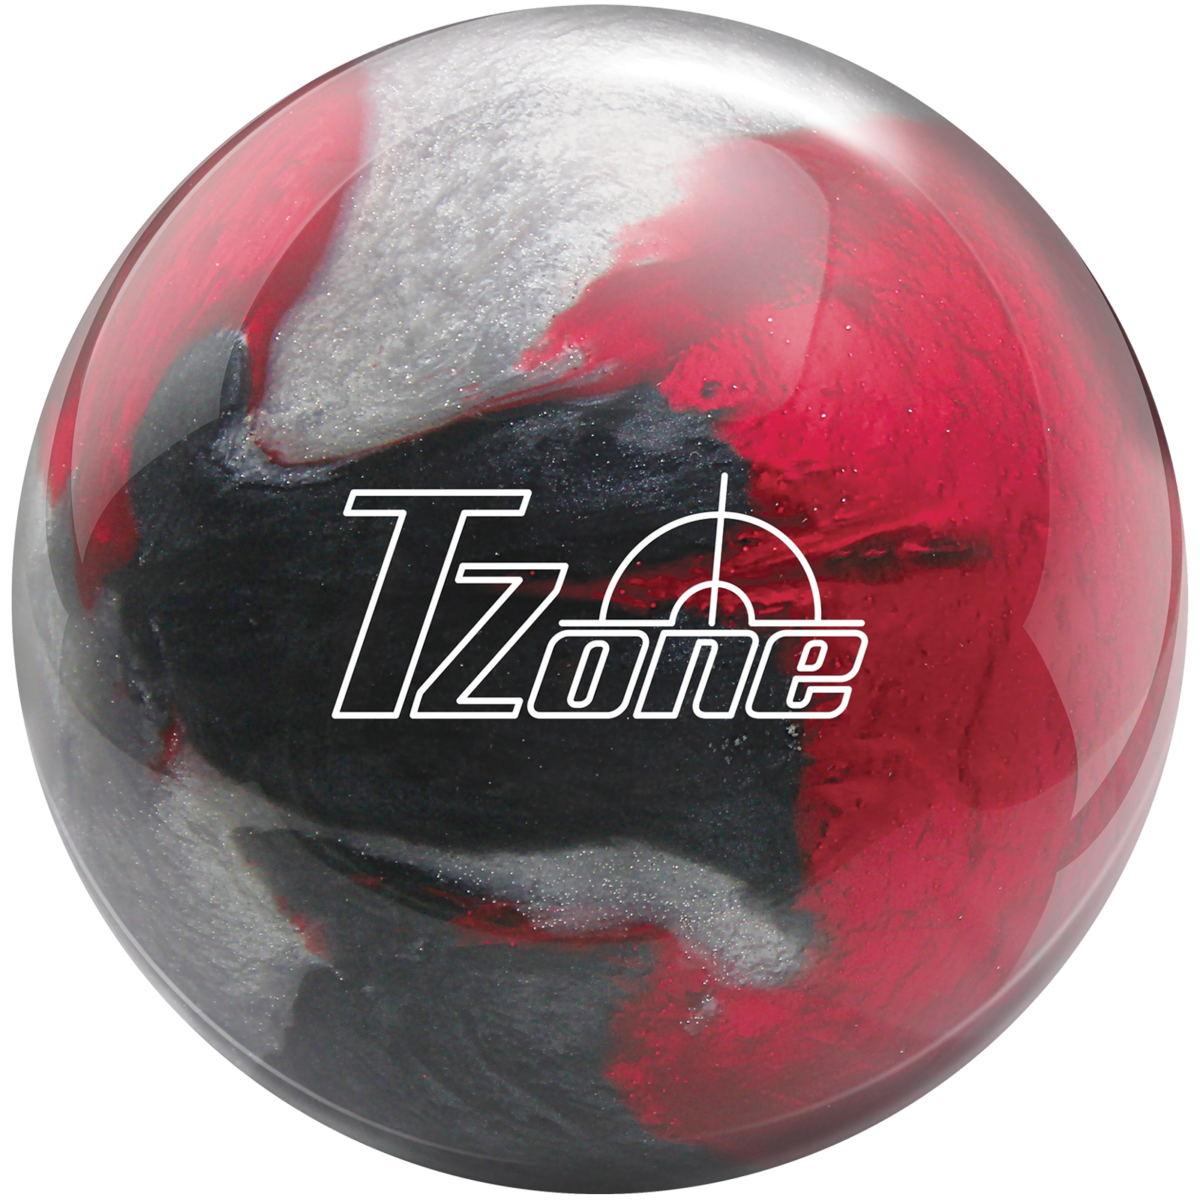 10lb Brunswick TZone Frozen Bliss Bowling Ball NEW! 